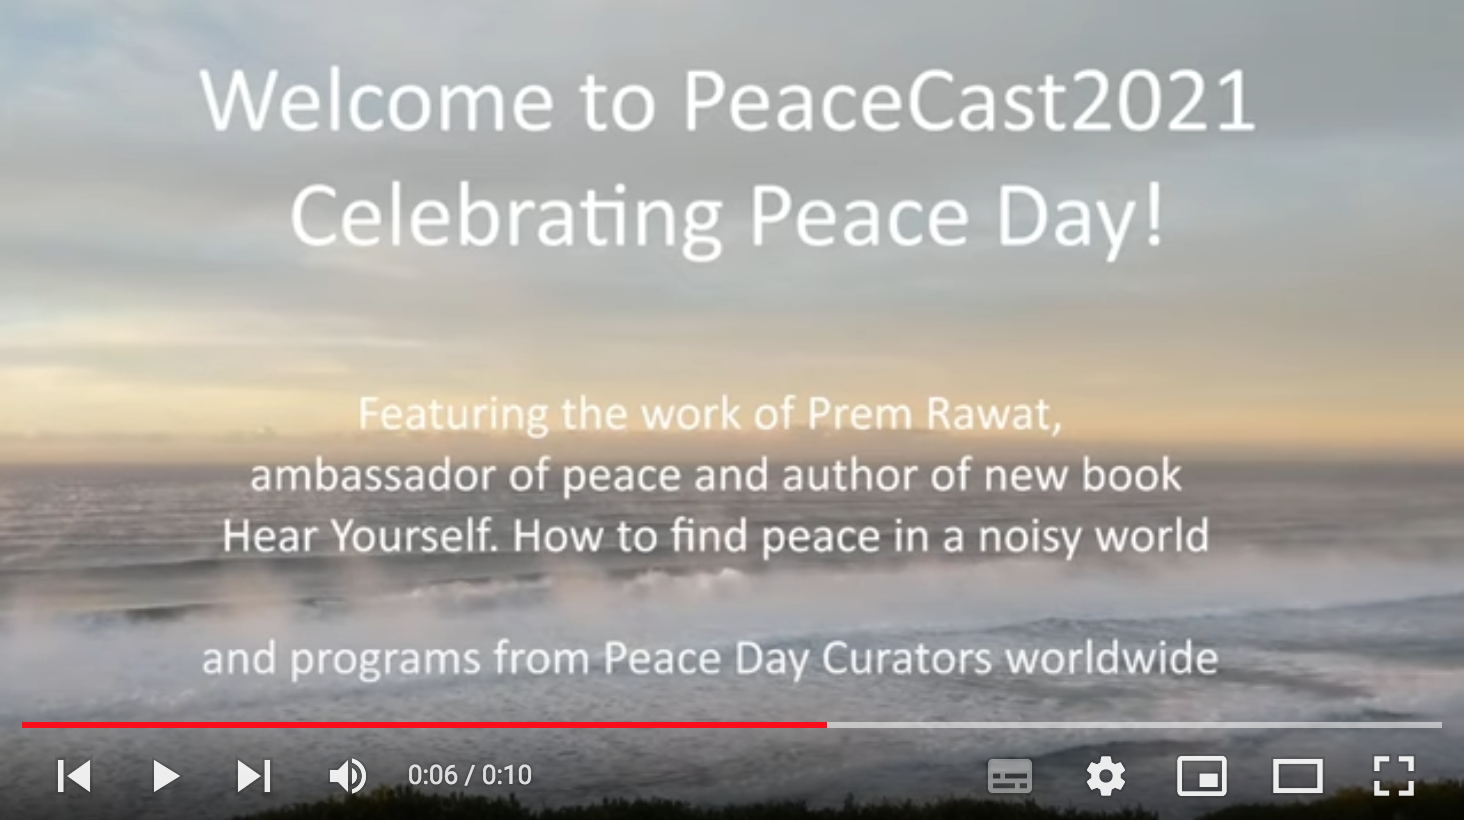 PeaceCast TV 2021